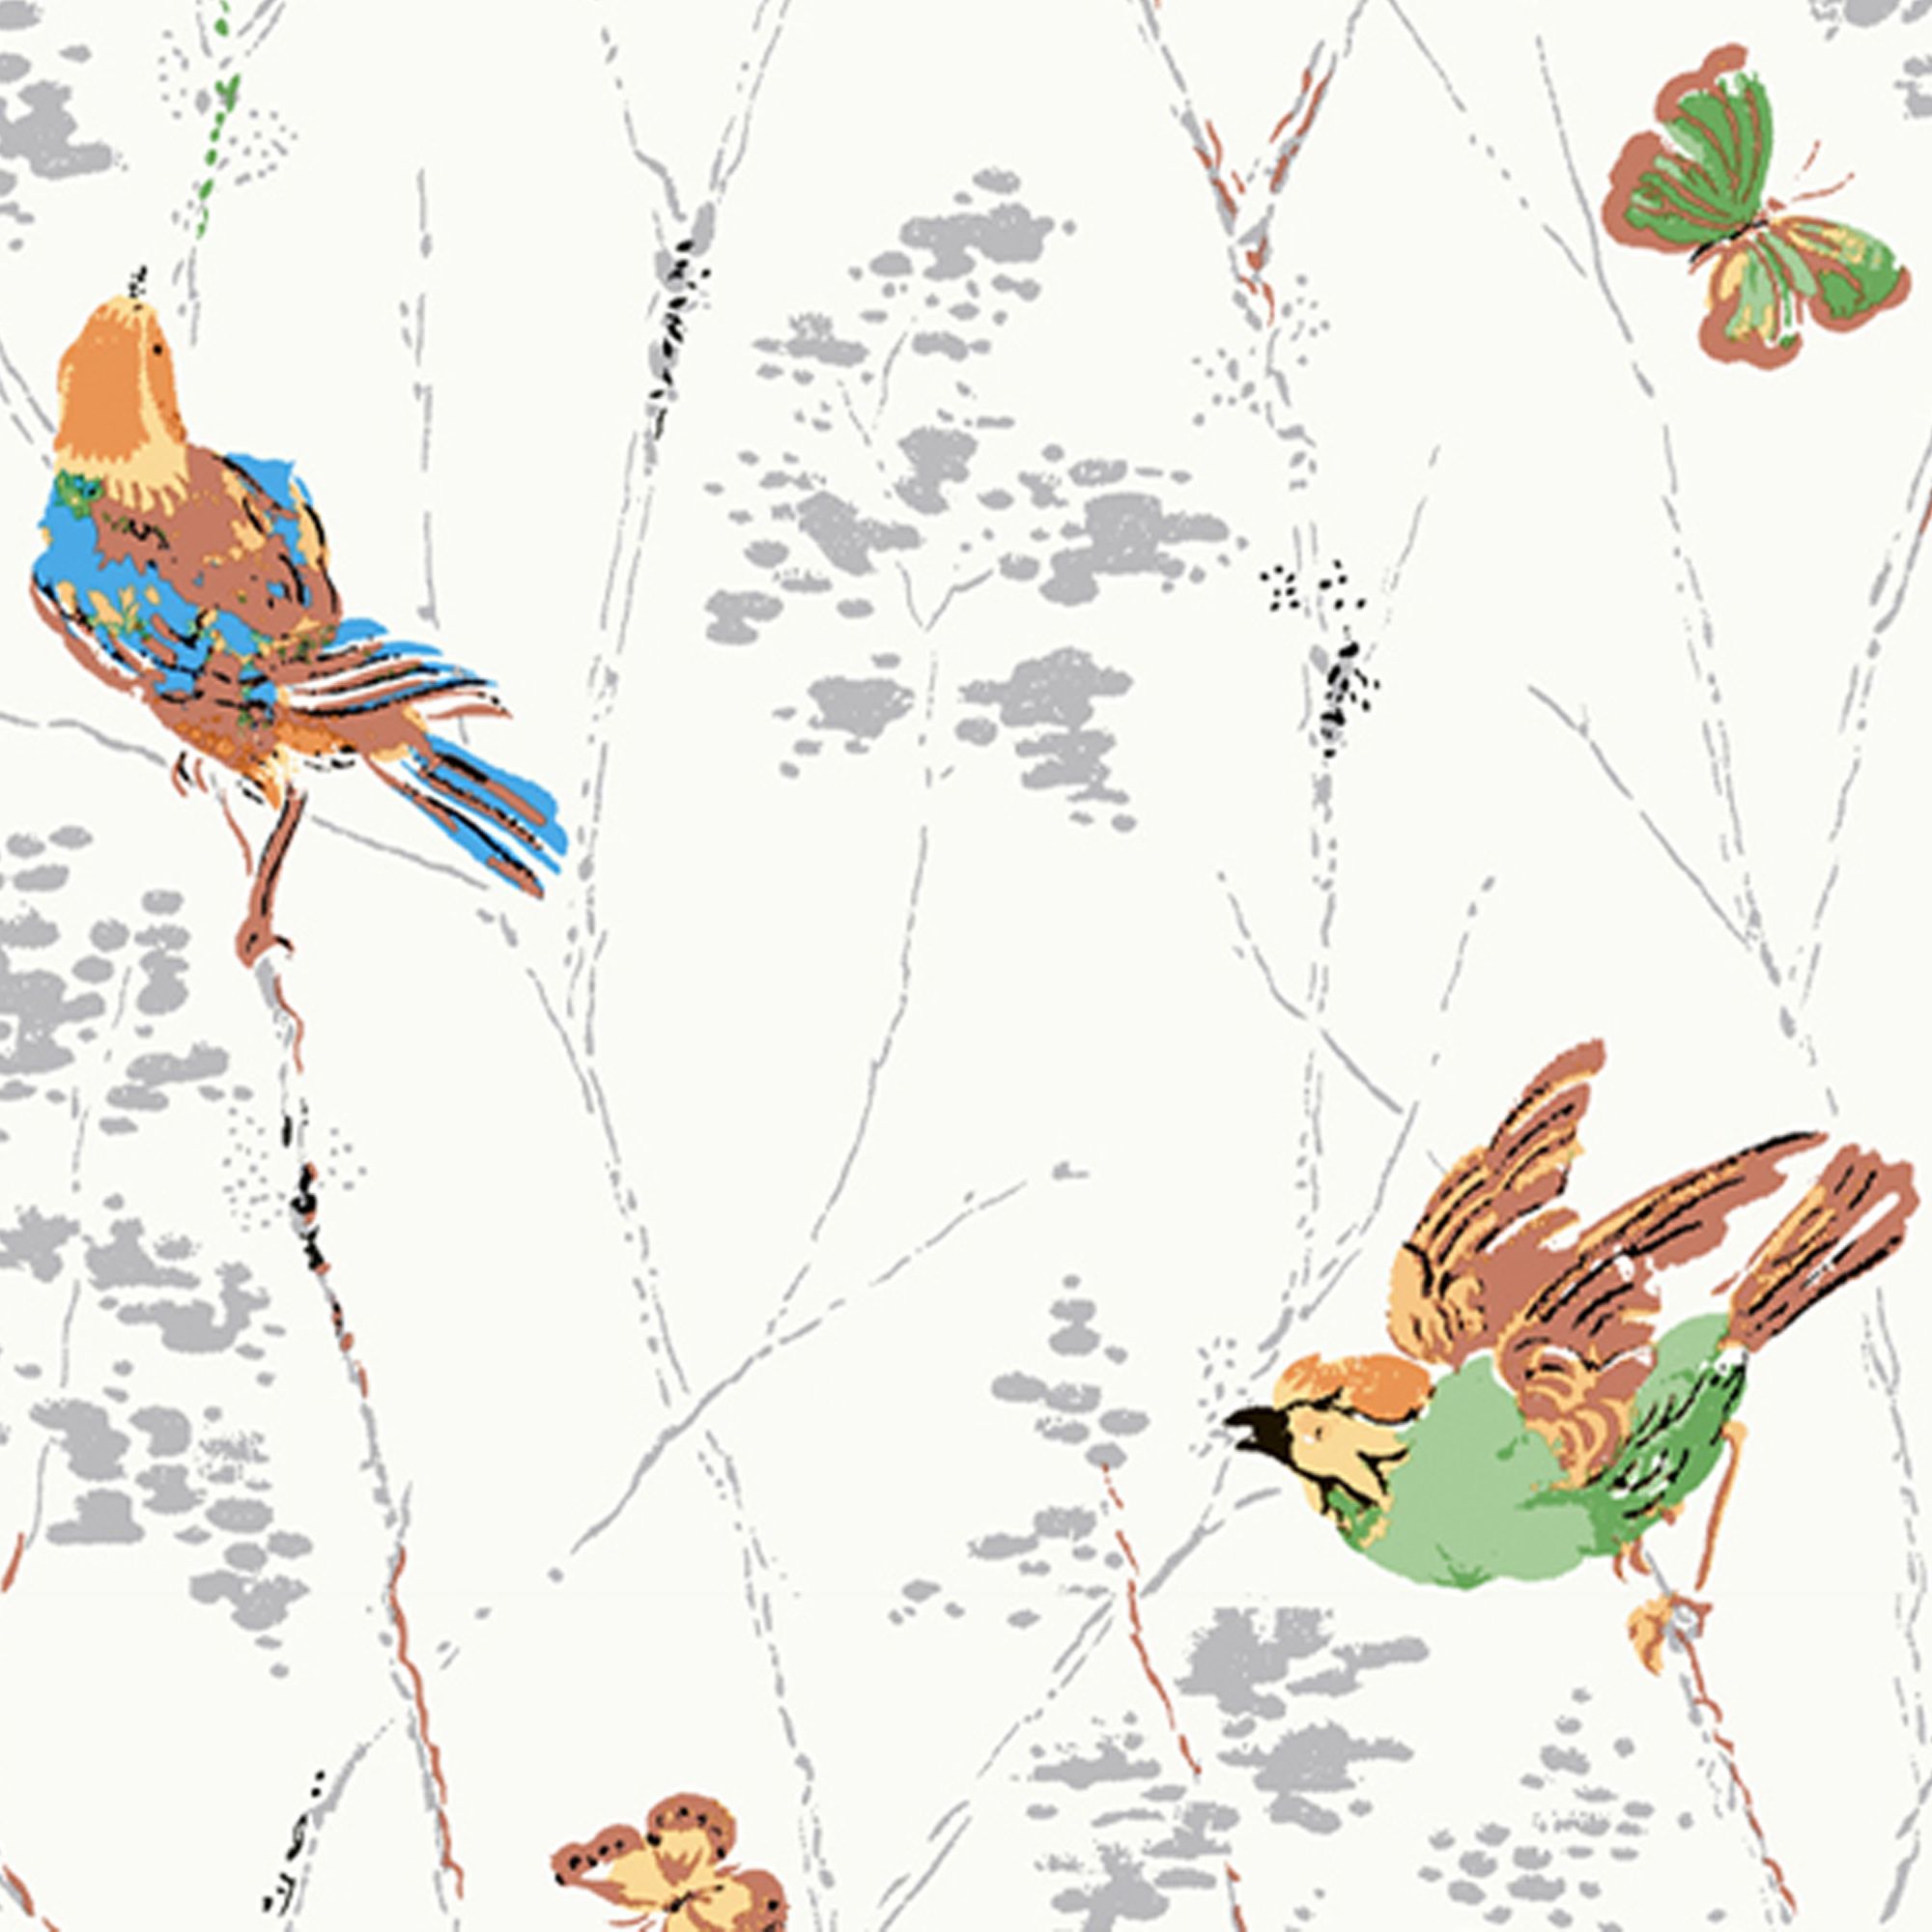 Laura Ashley Aviary Natural Animal Smooth Wallpaper Sample